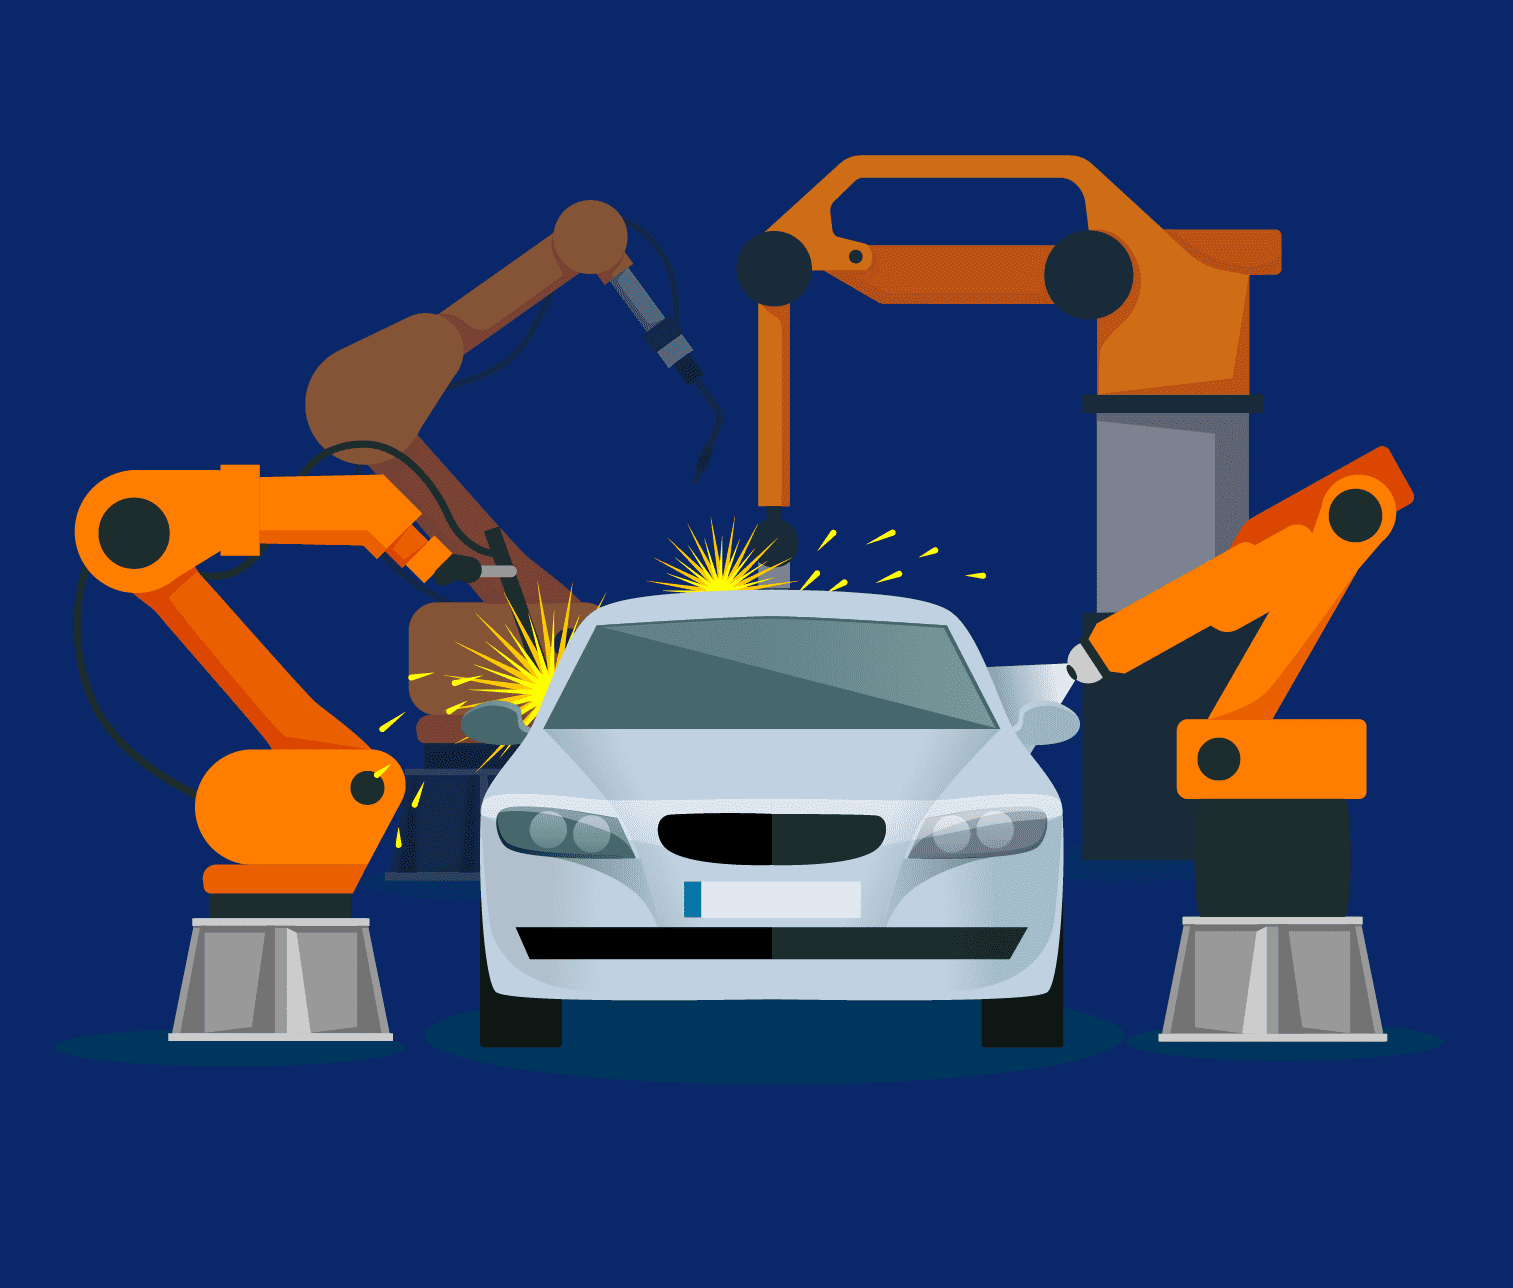 汽車車身焊接工藝是製造汽車的程序中，需要運用到大量的焊接機器人及自動化焊接設備